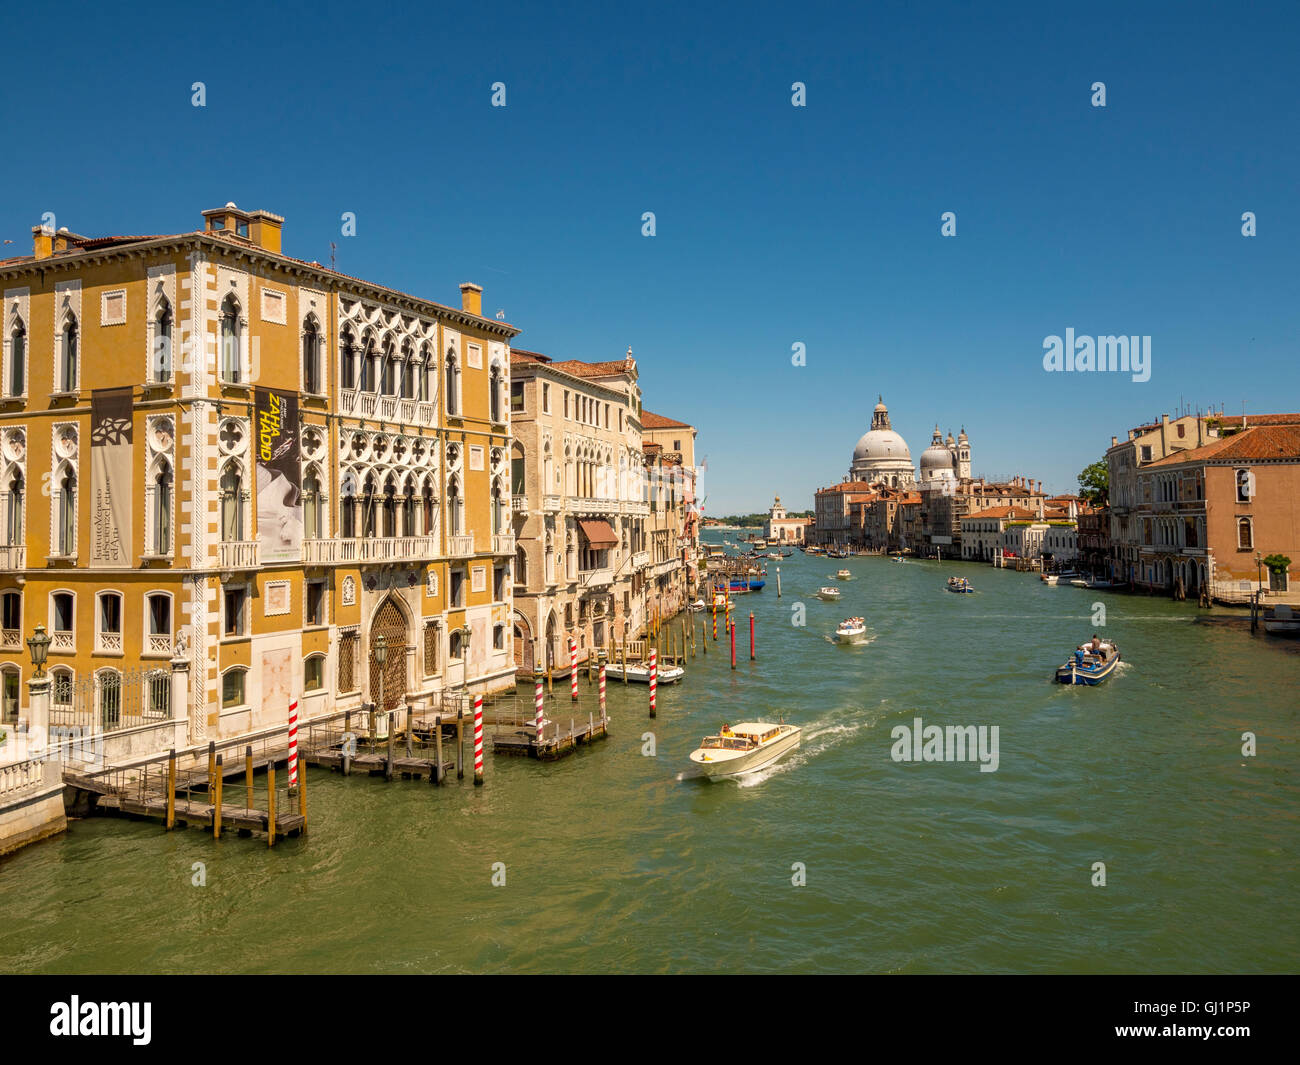 Palazzo Cavalli-Franchetti e il Grand Canal, Venezia, con la cupola di Santa Maria della Salute in distanza. Foto Stock